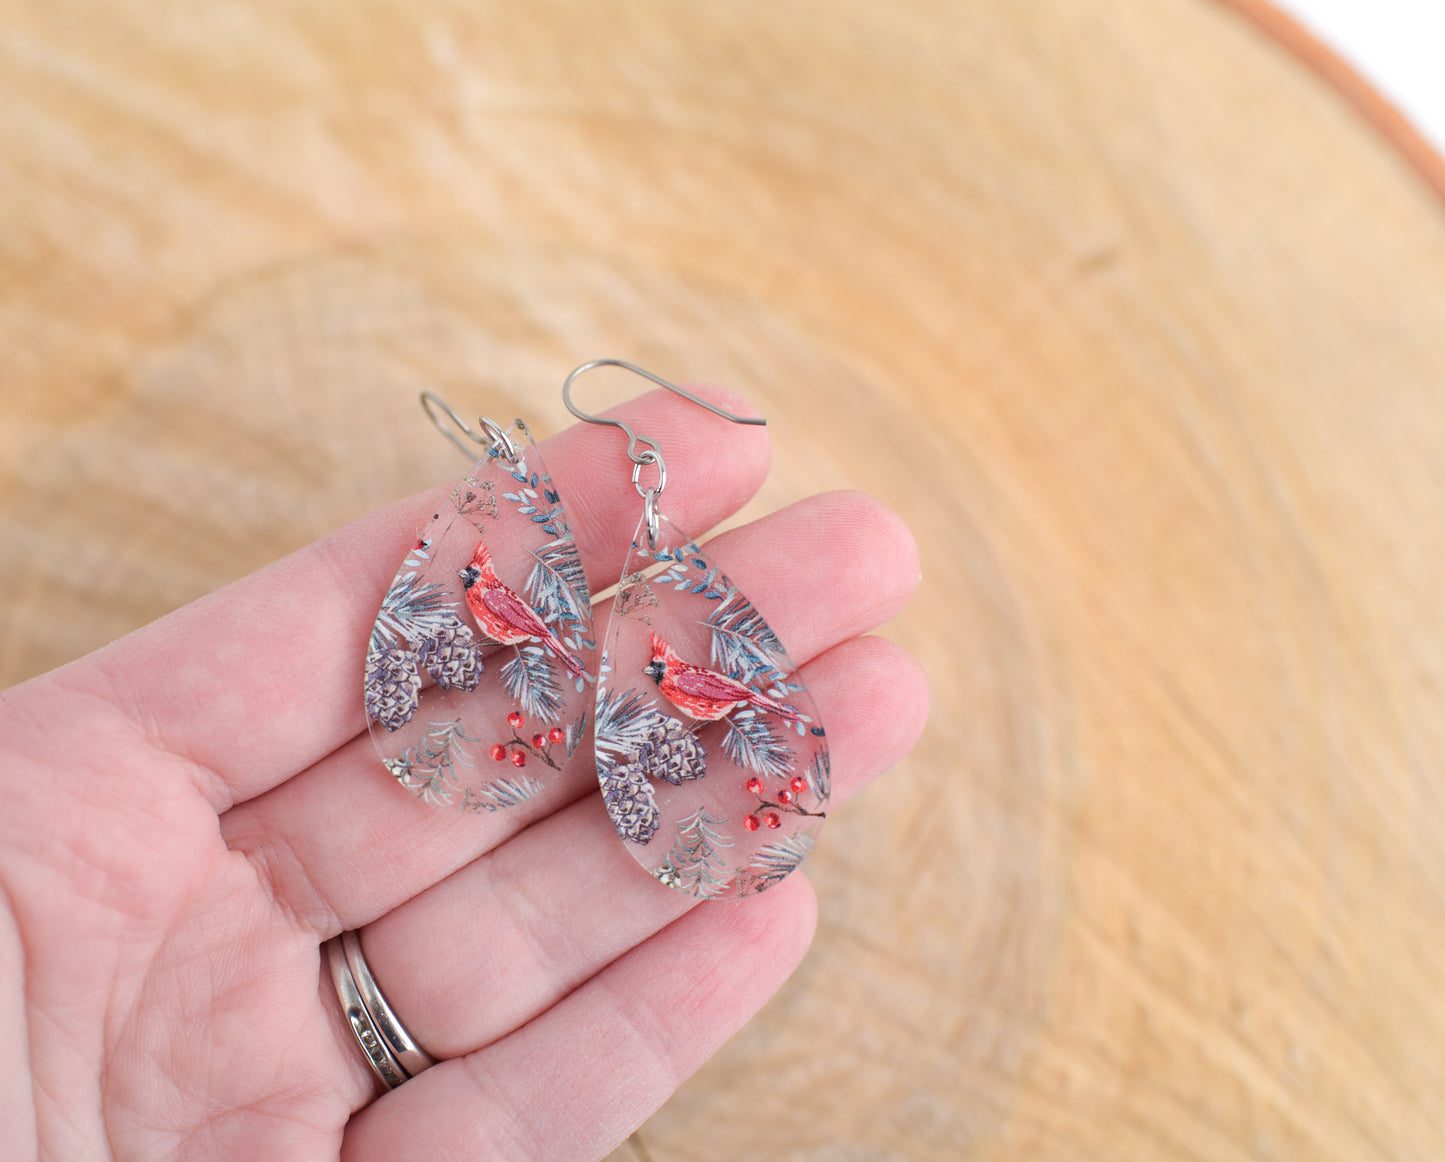 Cardinal Acrylic Teardrop Dangle Earrings with Titanium Ear Wires- CLEAR